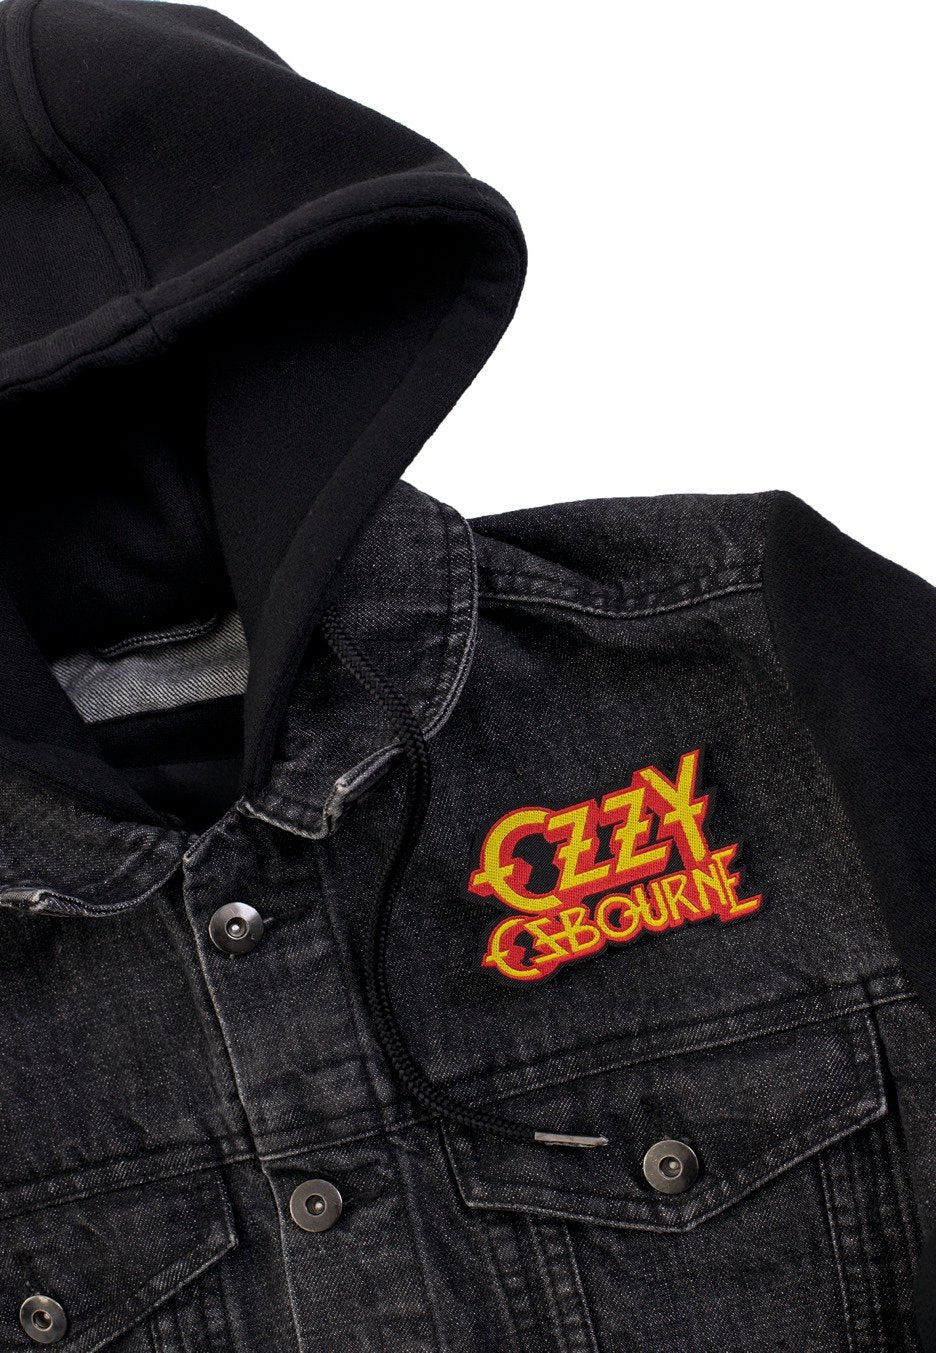 Ozzy Osbourne - Logo Cut - Patch